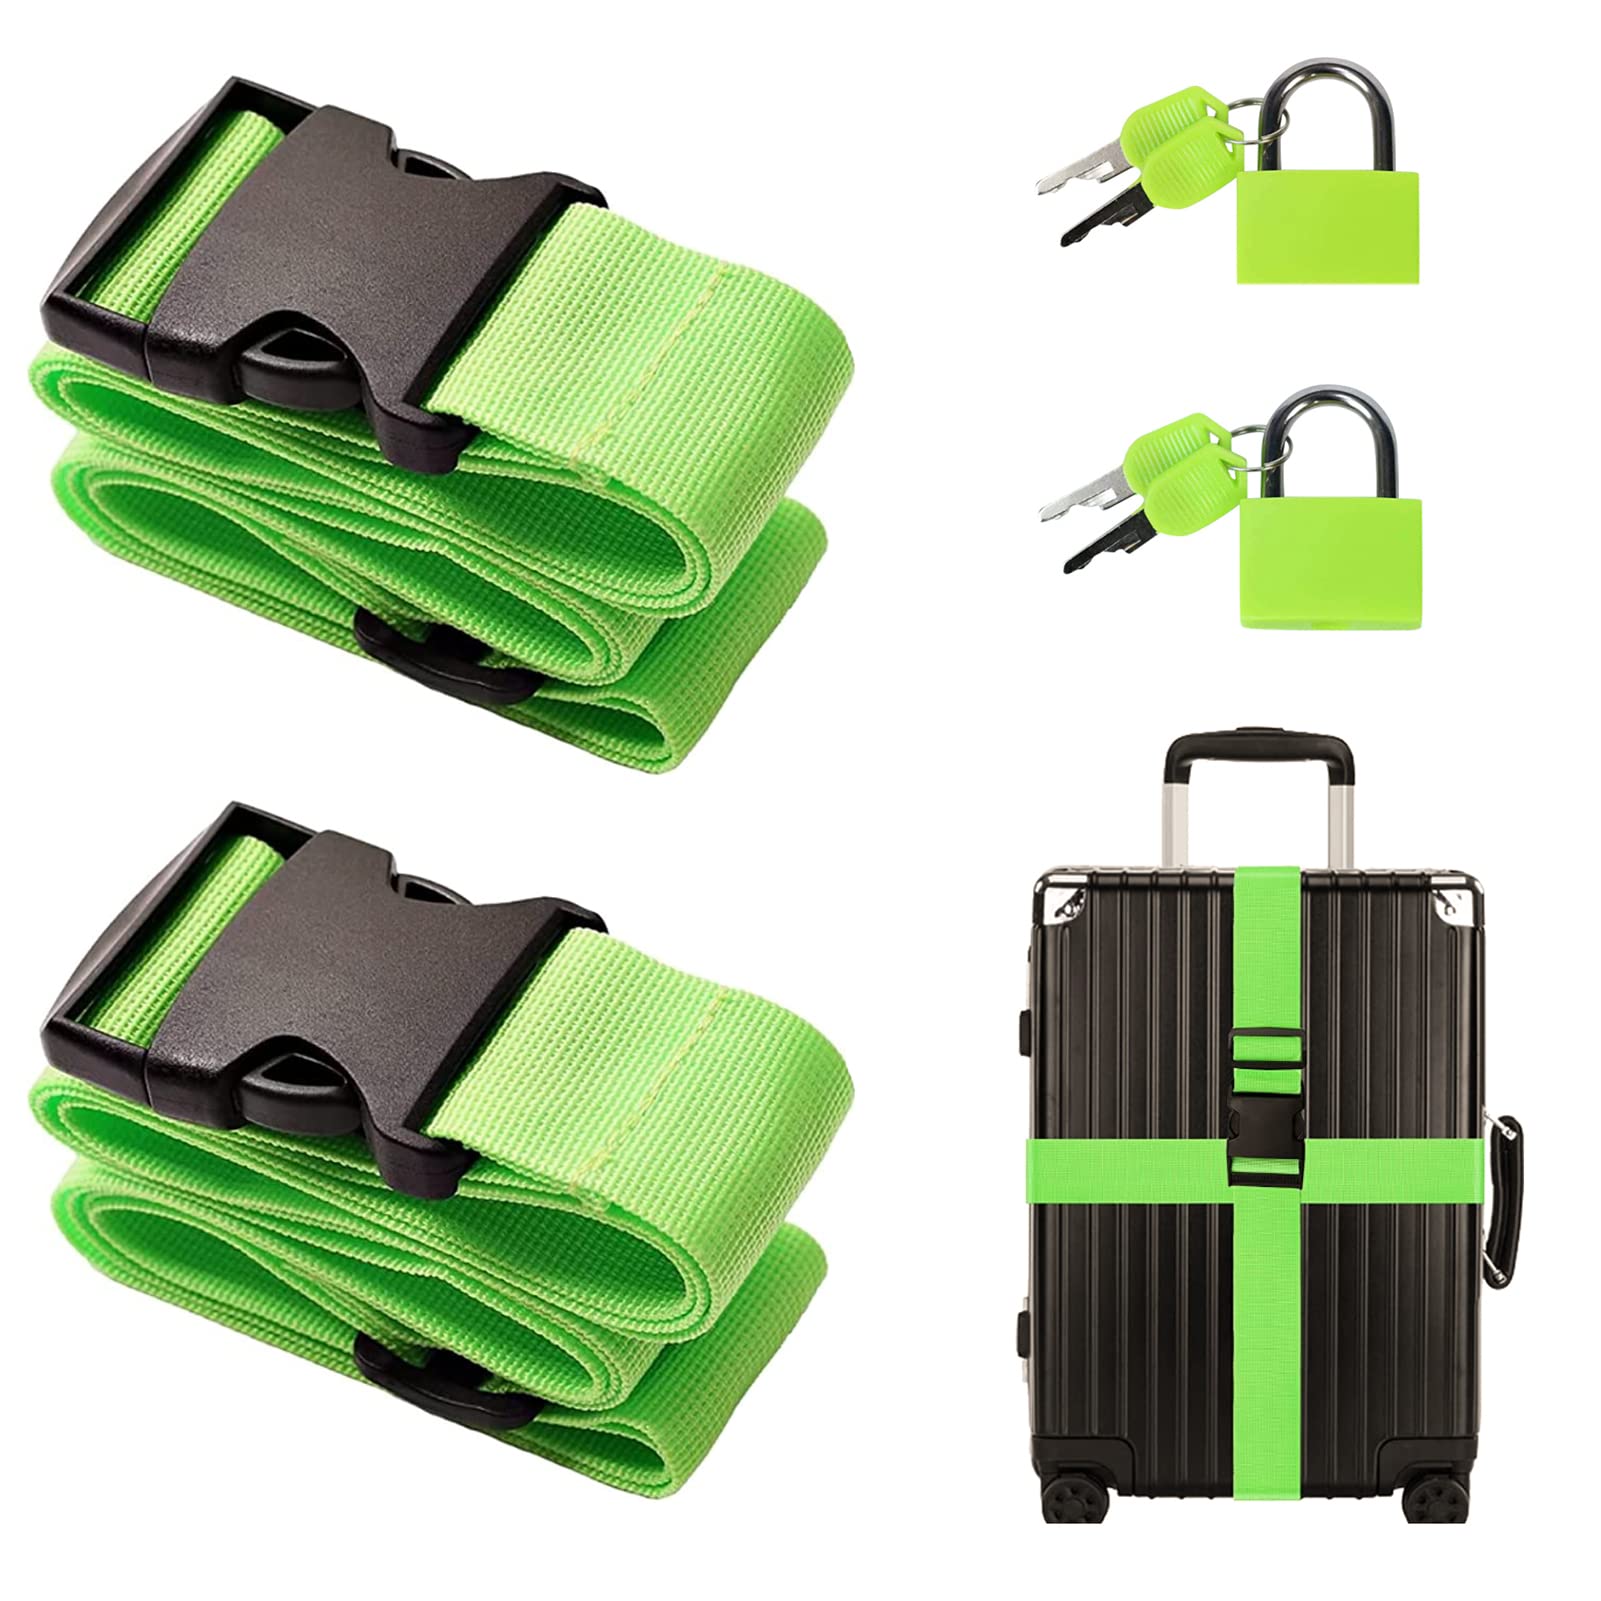 Koffergurt Kofferband Gurt 2er-Pack, 200 cm /78,74 in Grüne Nylon Einstellbare Kofferband mit Schloss Gepäckband Gepäckgurt Koffer Gurtband mit 2 Schlössern für Gepäck Reisezubehör von SwirlColor